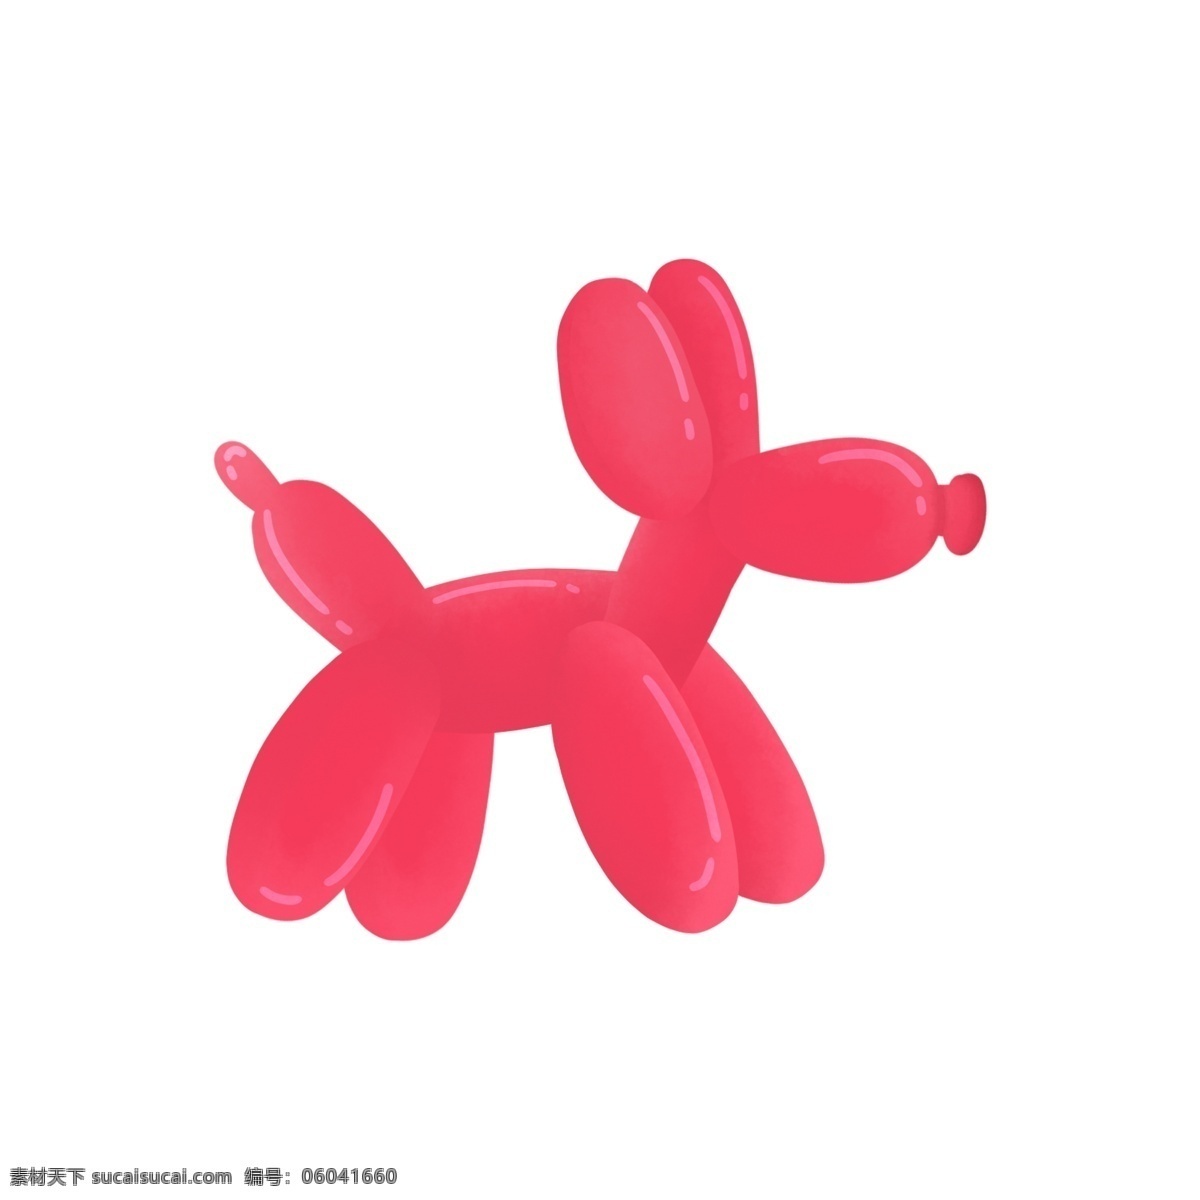 愚人 愚人节 卡通 狗 气球 海报 装饰 粉色气球 动物 长条气球 气球动物 气球小狗 愚人节装饰 海报装饰